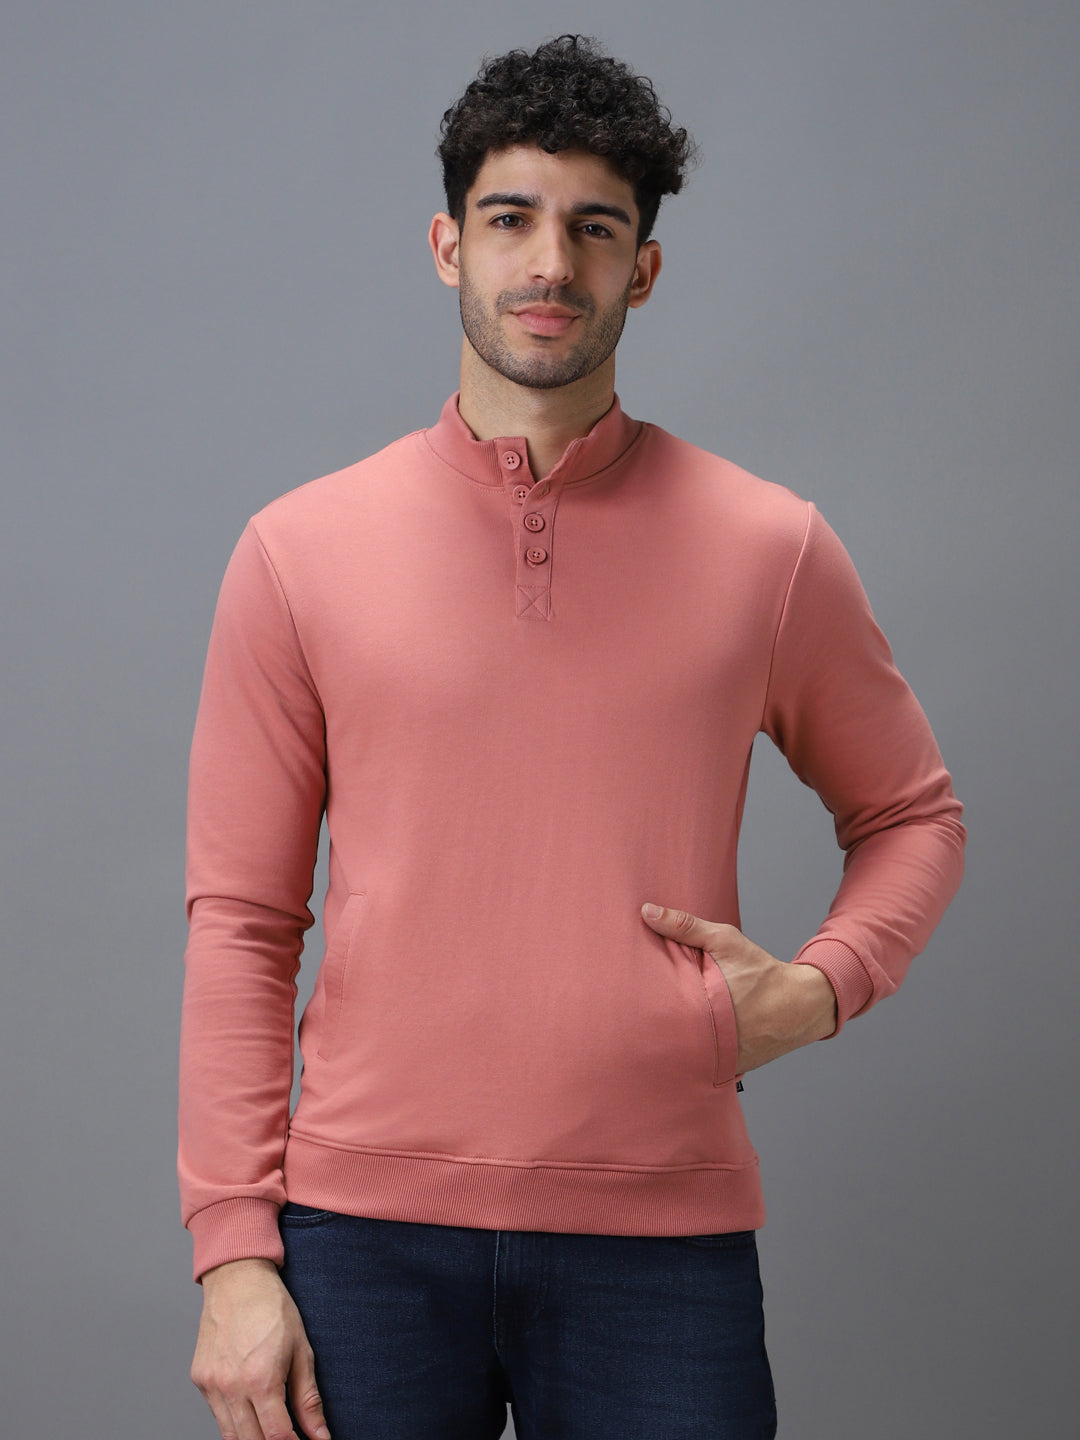 Men's Pink Cotton Solid Button High Neck Sweatshirt